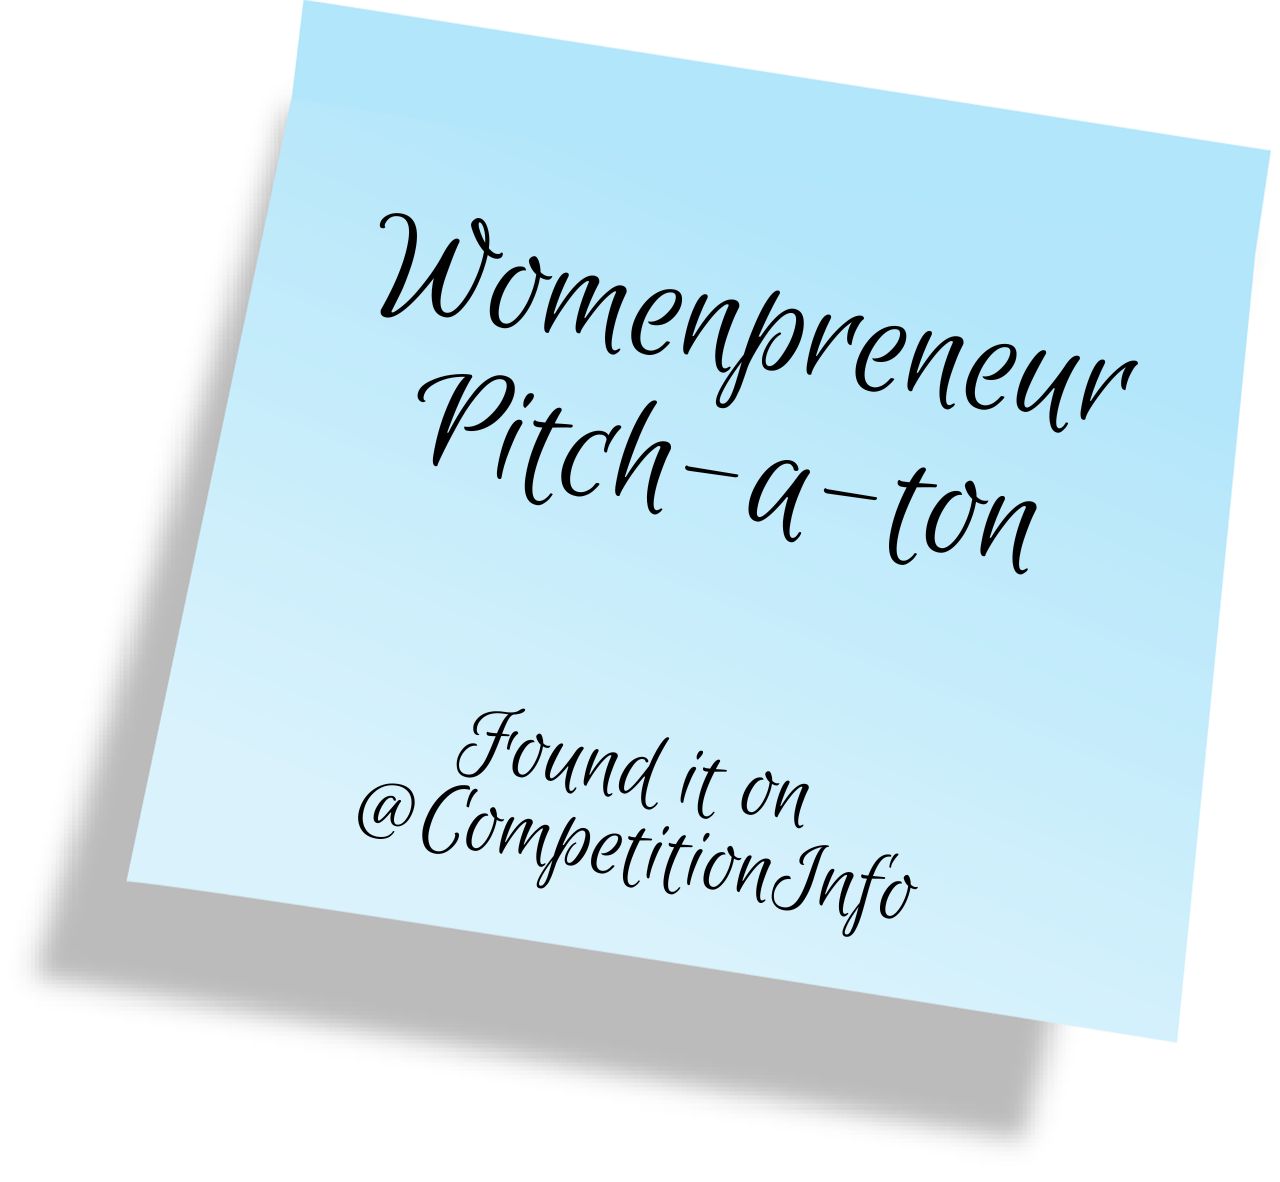 Womenpreneur Pitch-a-ton